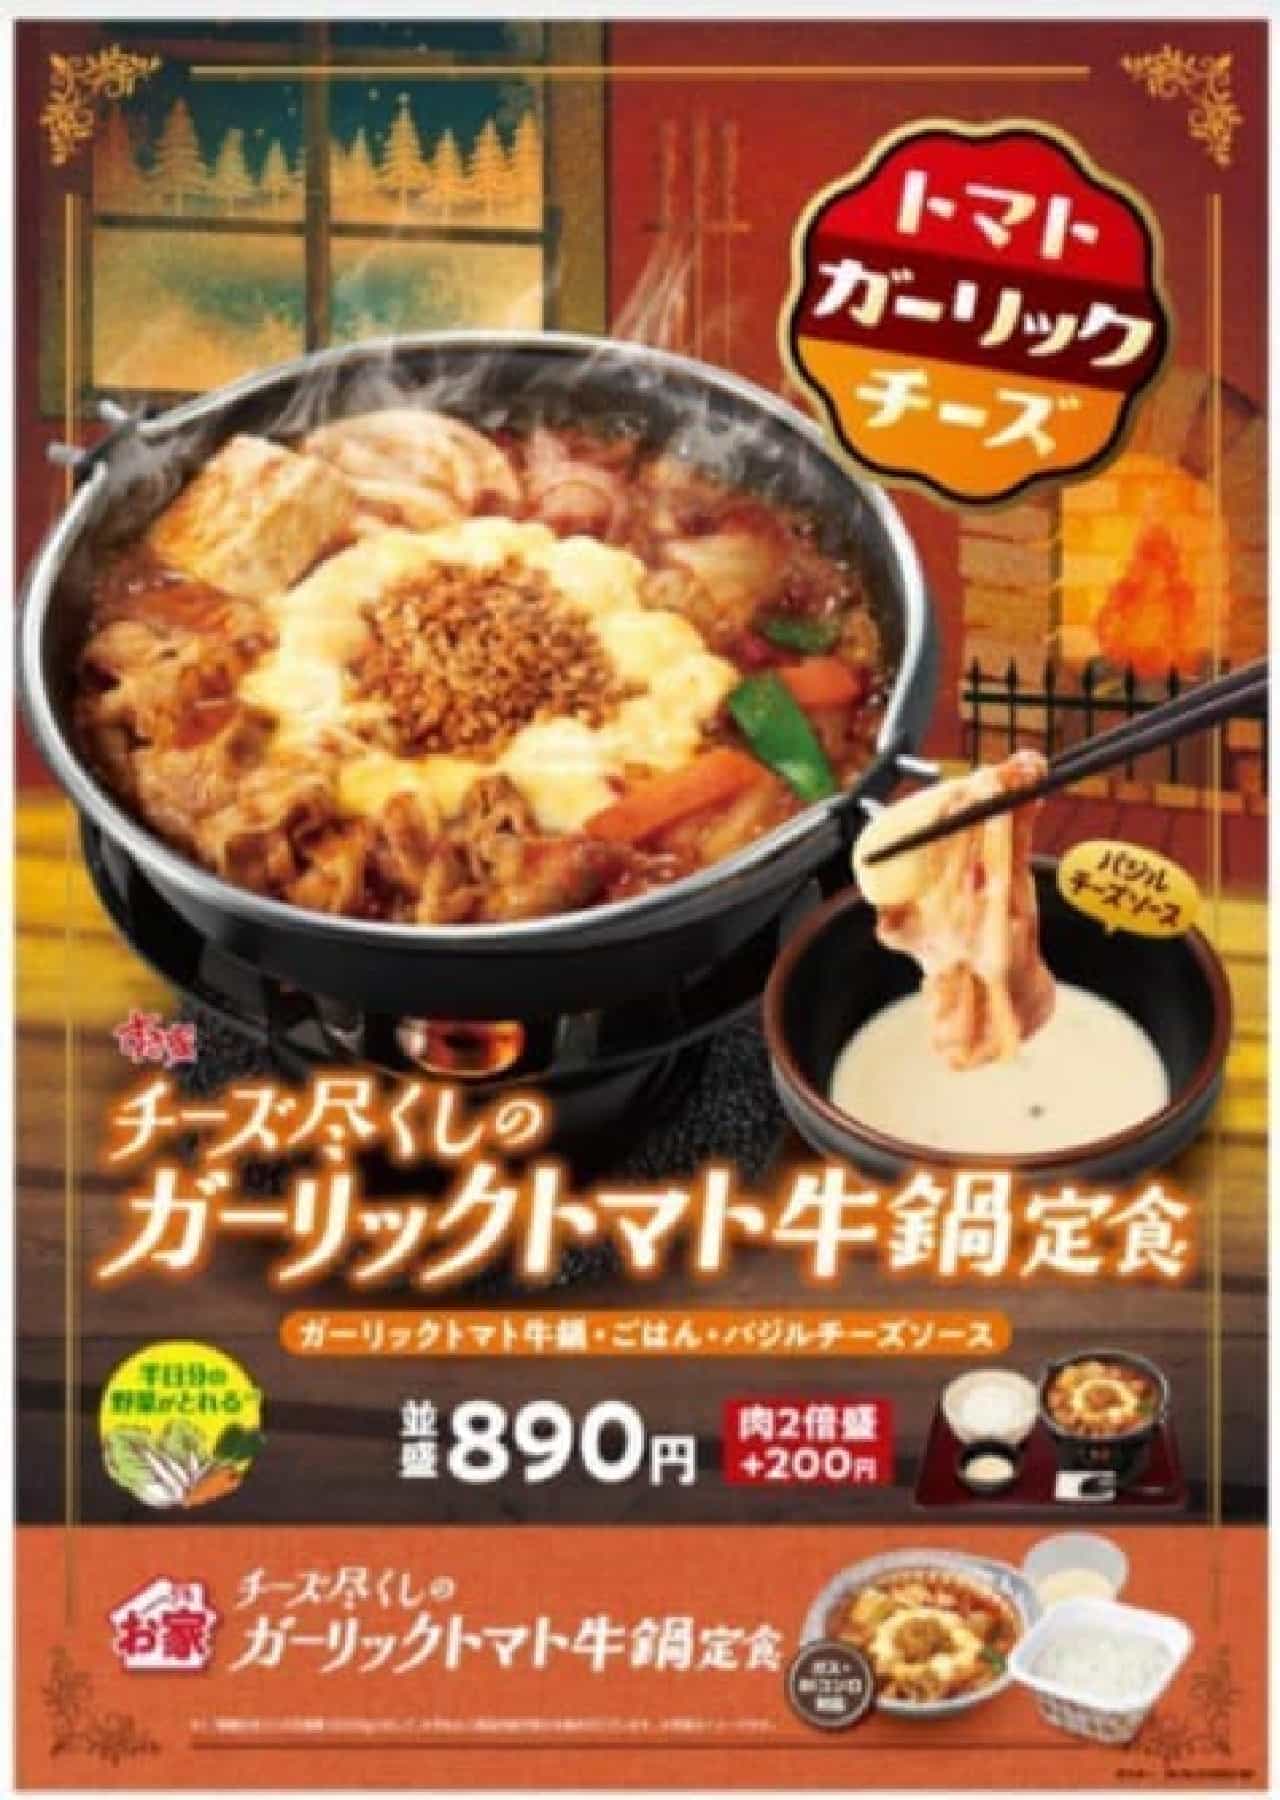 Sukiya "Cheese-filled garlic tomato beef pot set meal"